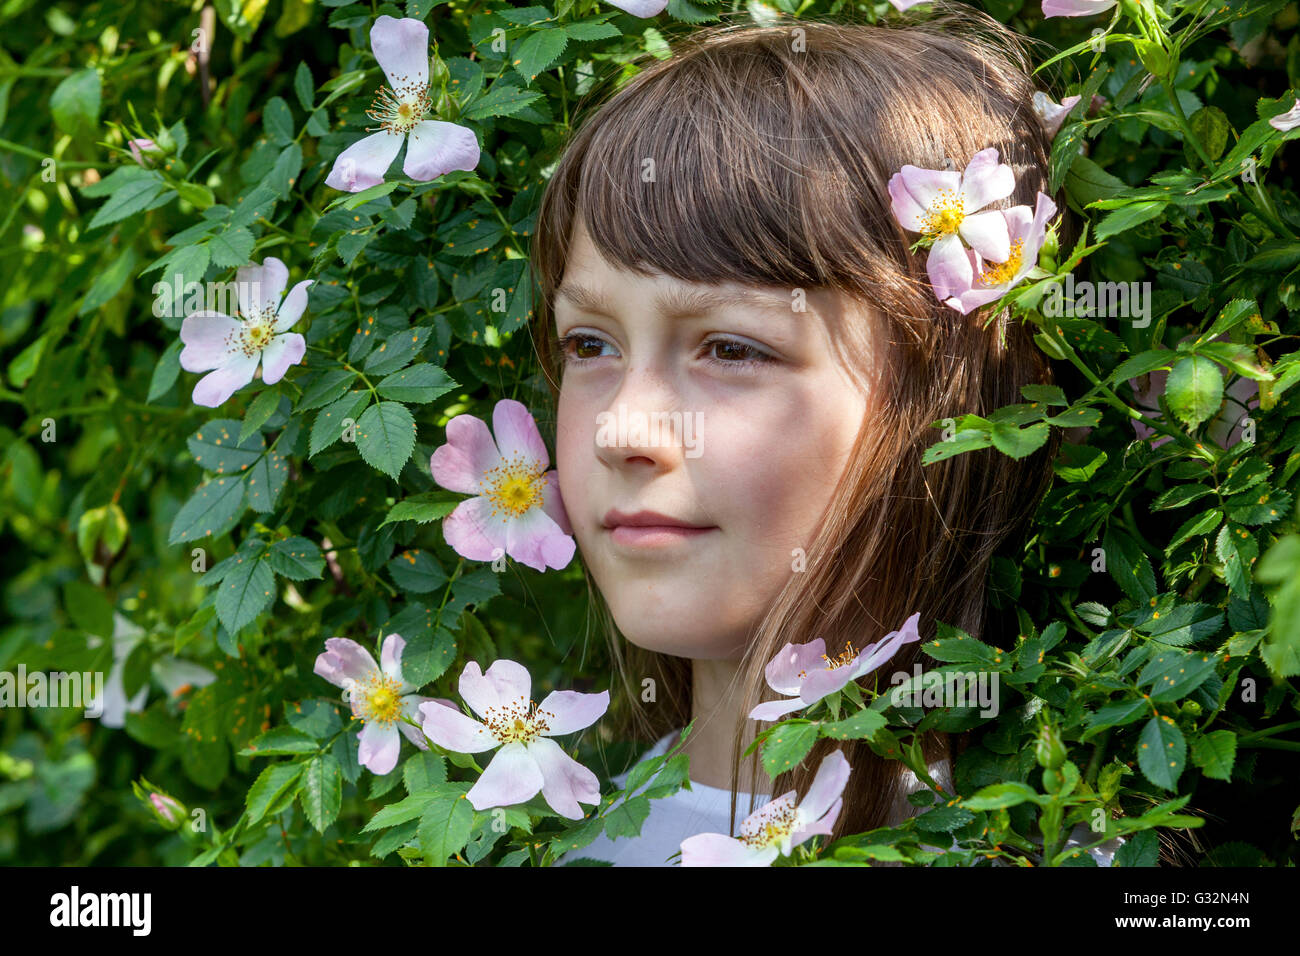 La edad de inocencia, chica de 7 años cara en un arbusto de rosas flores, niñas juegos novia Foto de stock